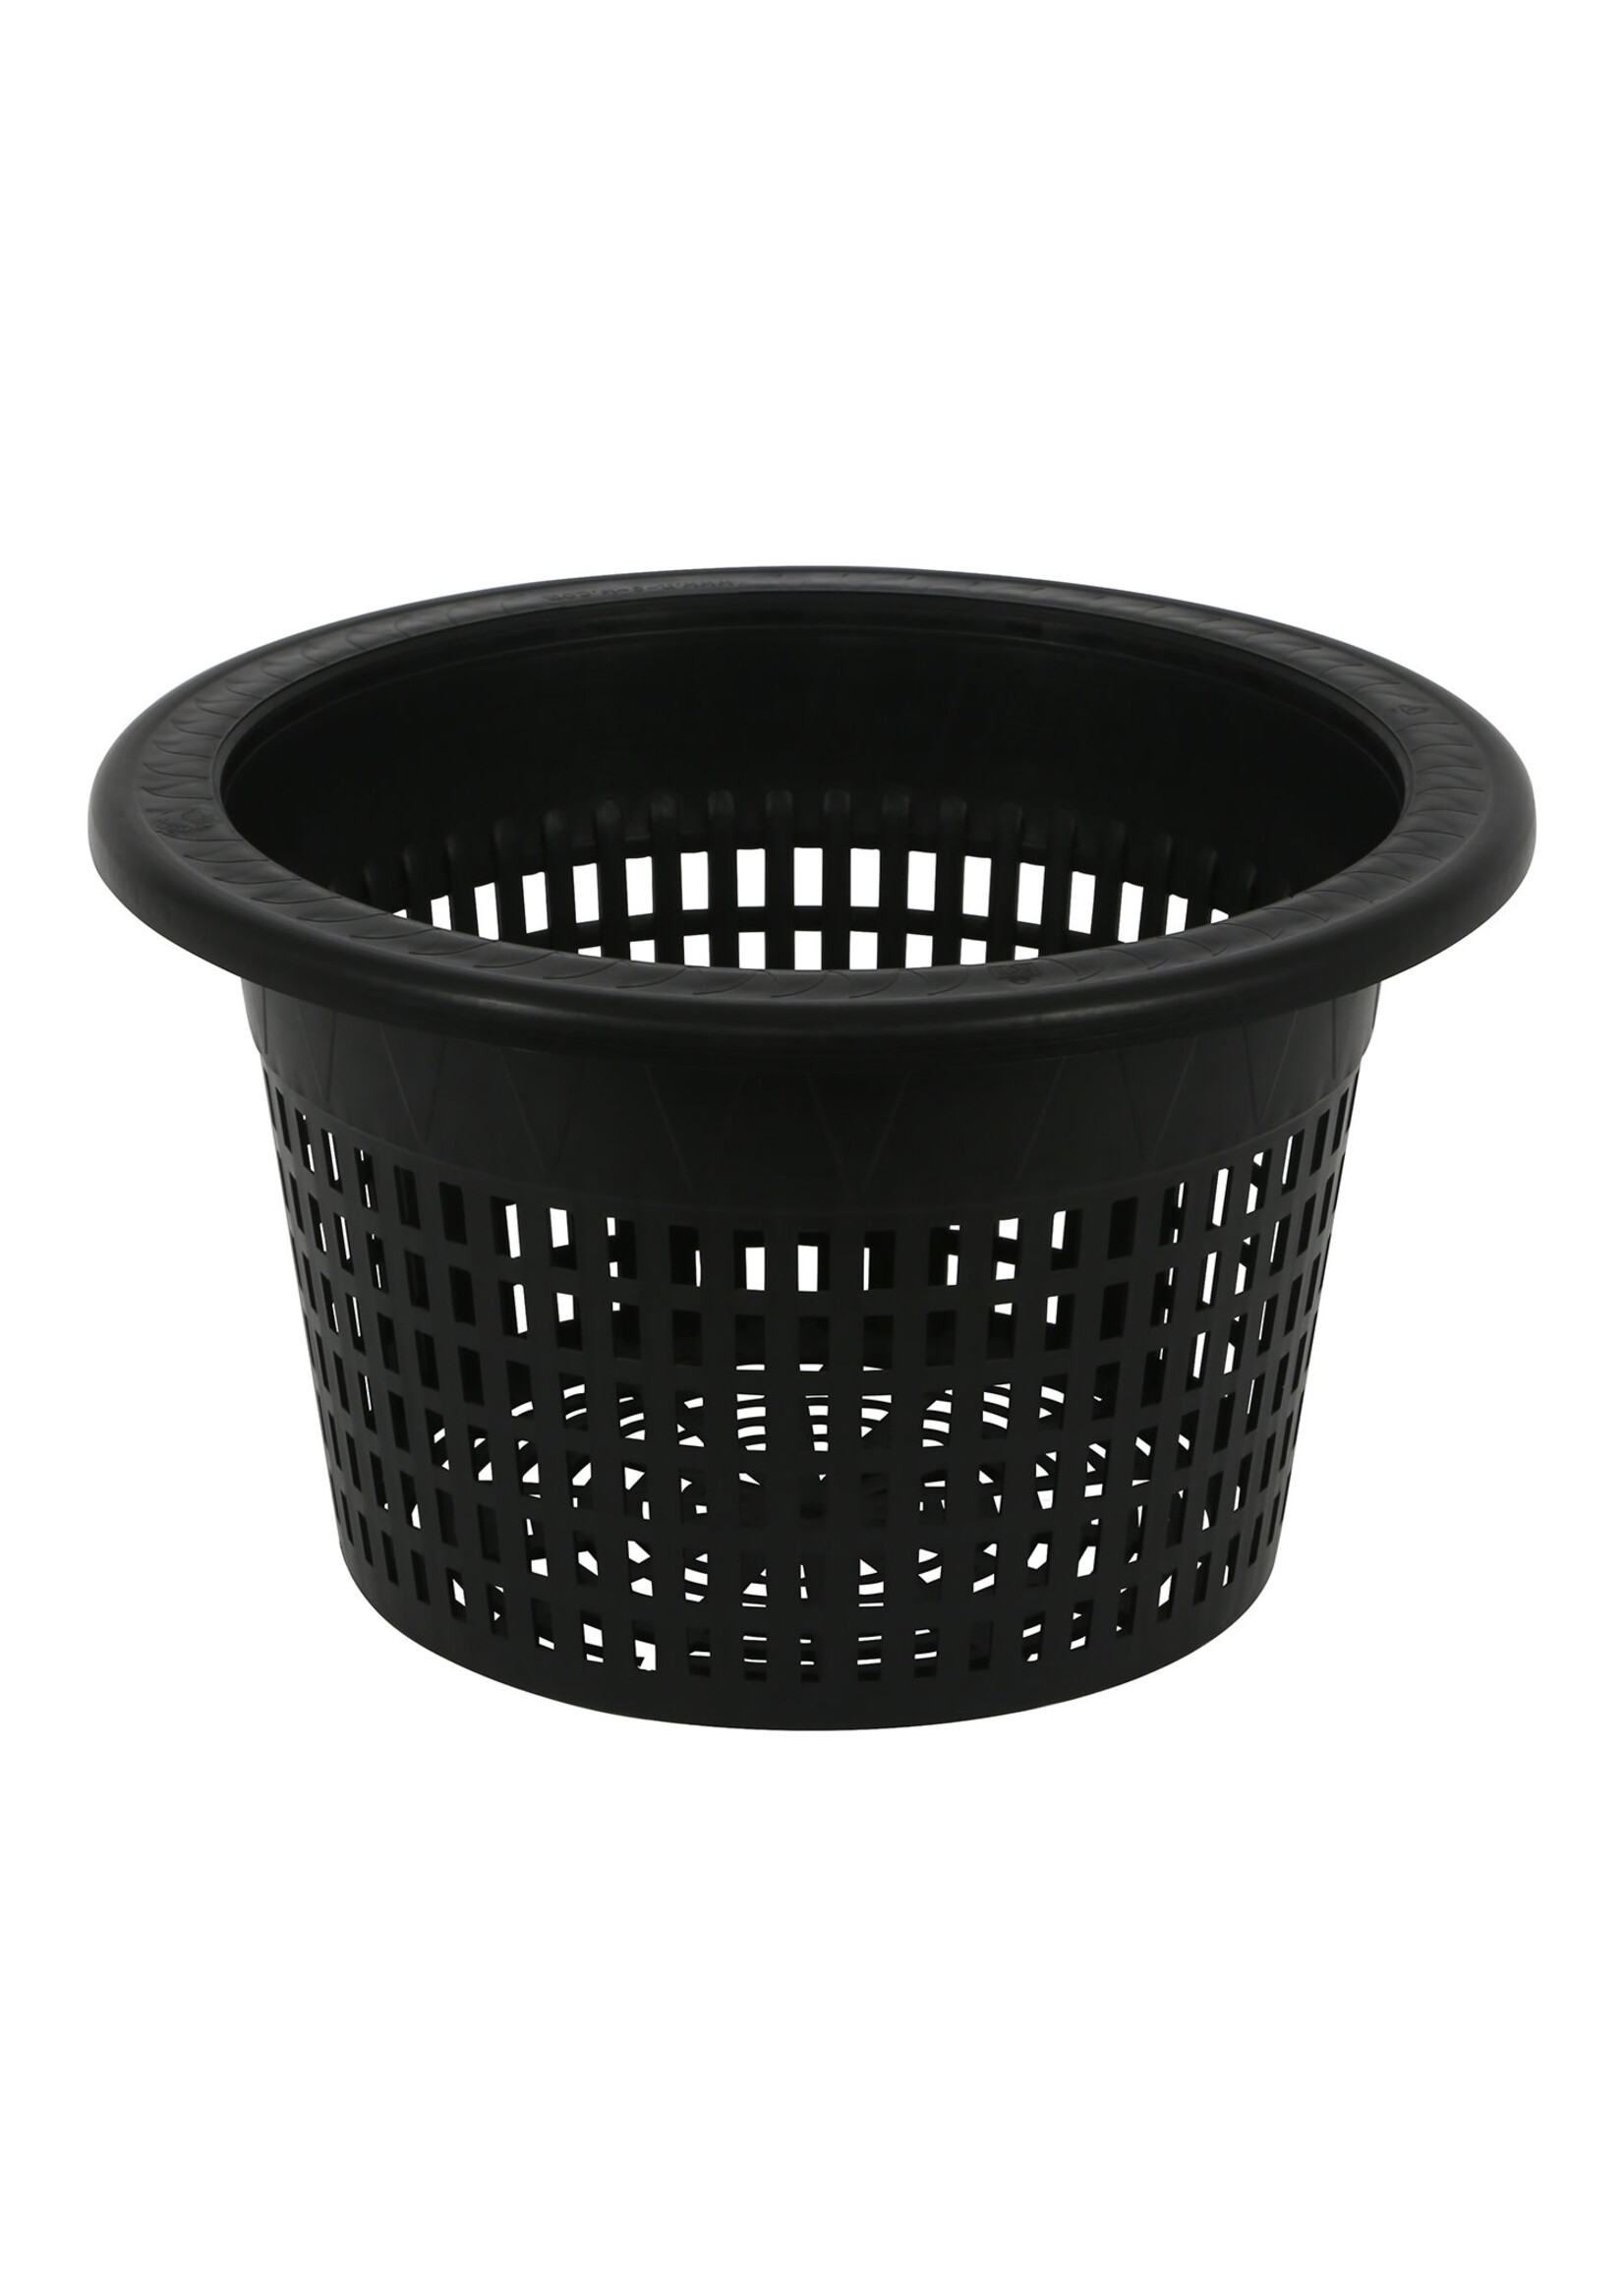 Gro Pro Gro Pro Mesh Pot/Bucket Lid 10 in (50/Cs)